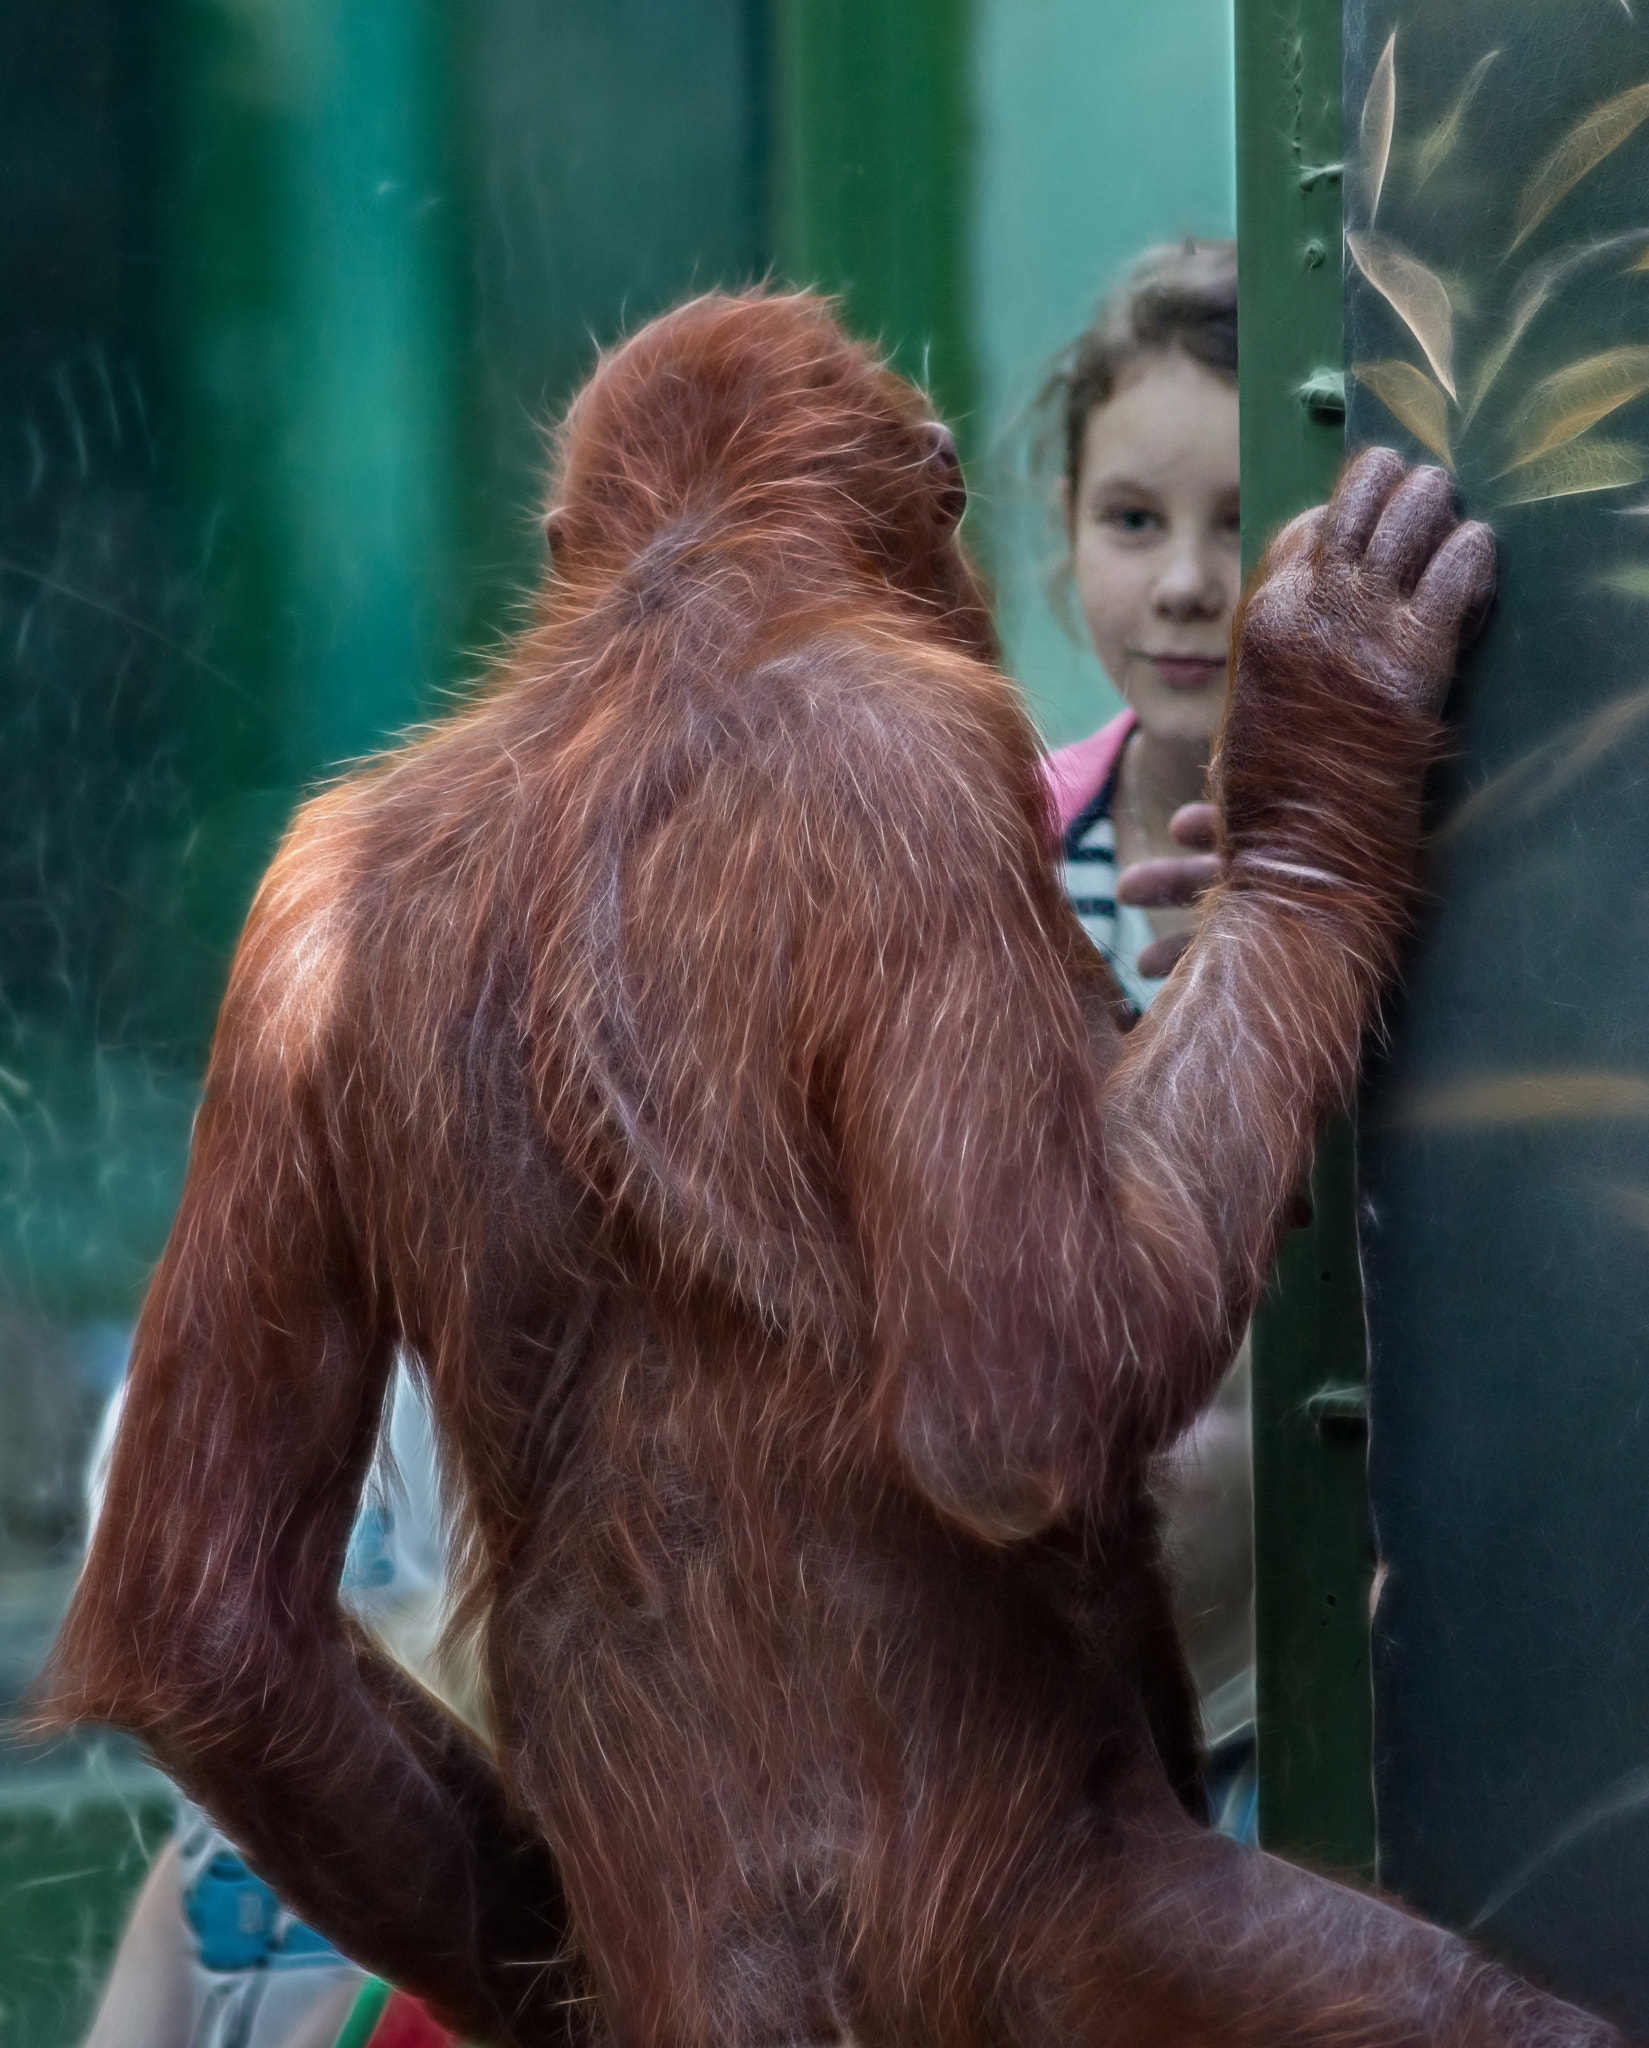 Nikon D600 sample photo. Silent conversation girls and orangutan photography